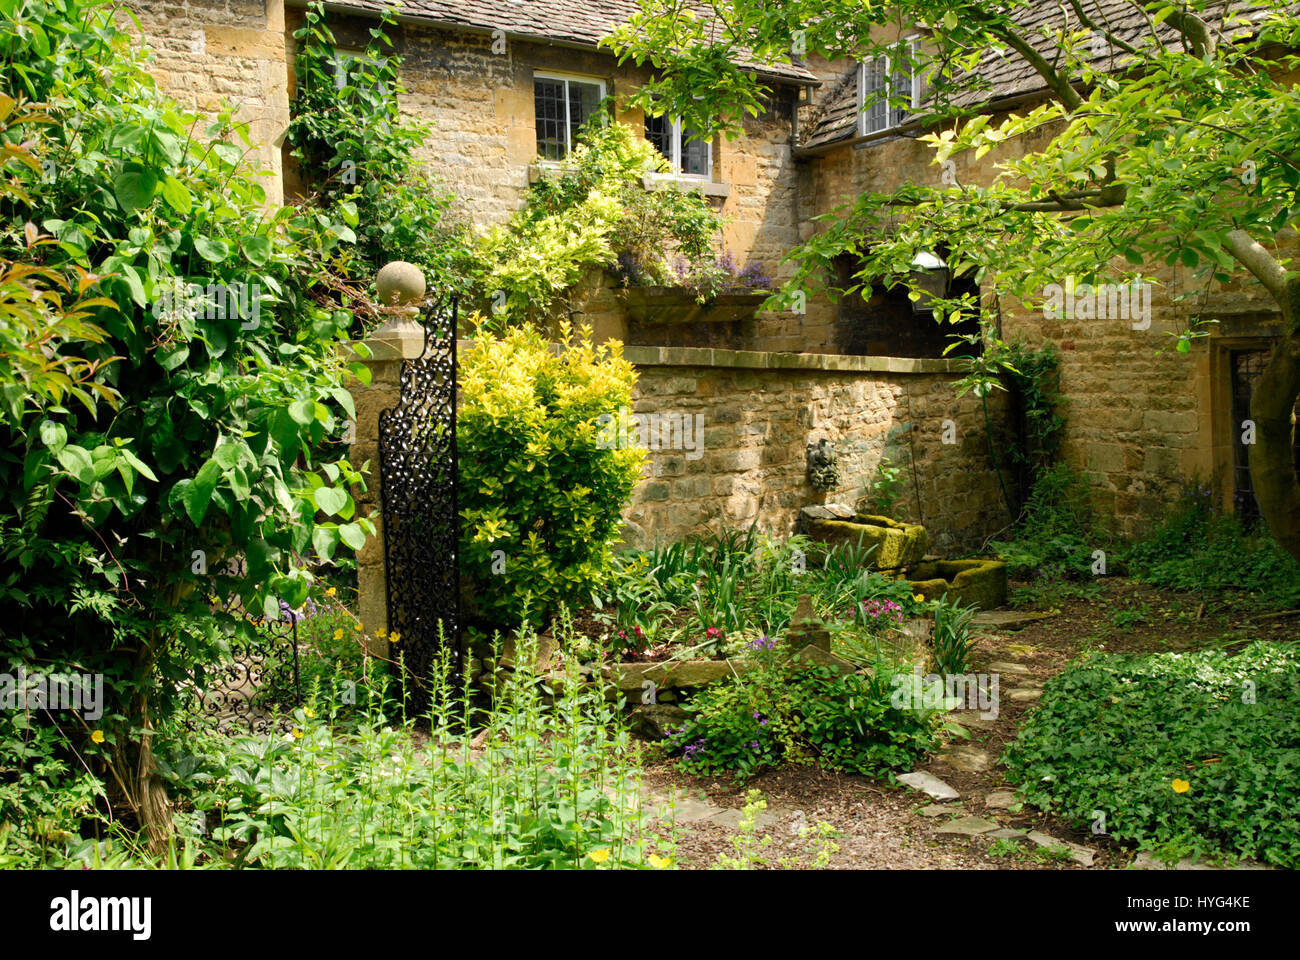 Szene in einem englischen Landhaus-Garten mit Cotswold Steinmauern und gemischte Pflanzung Stockfoto